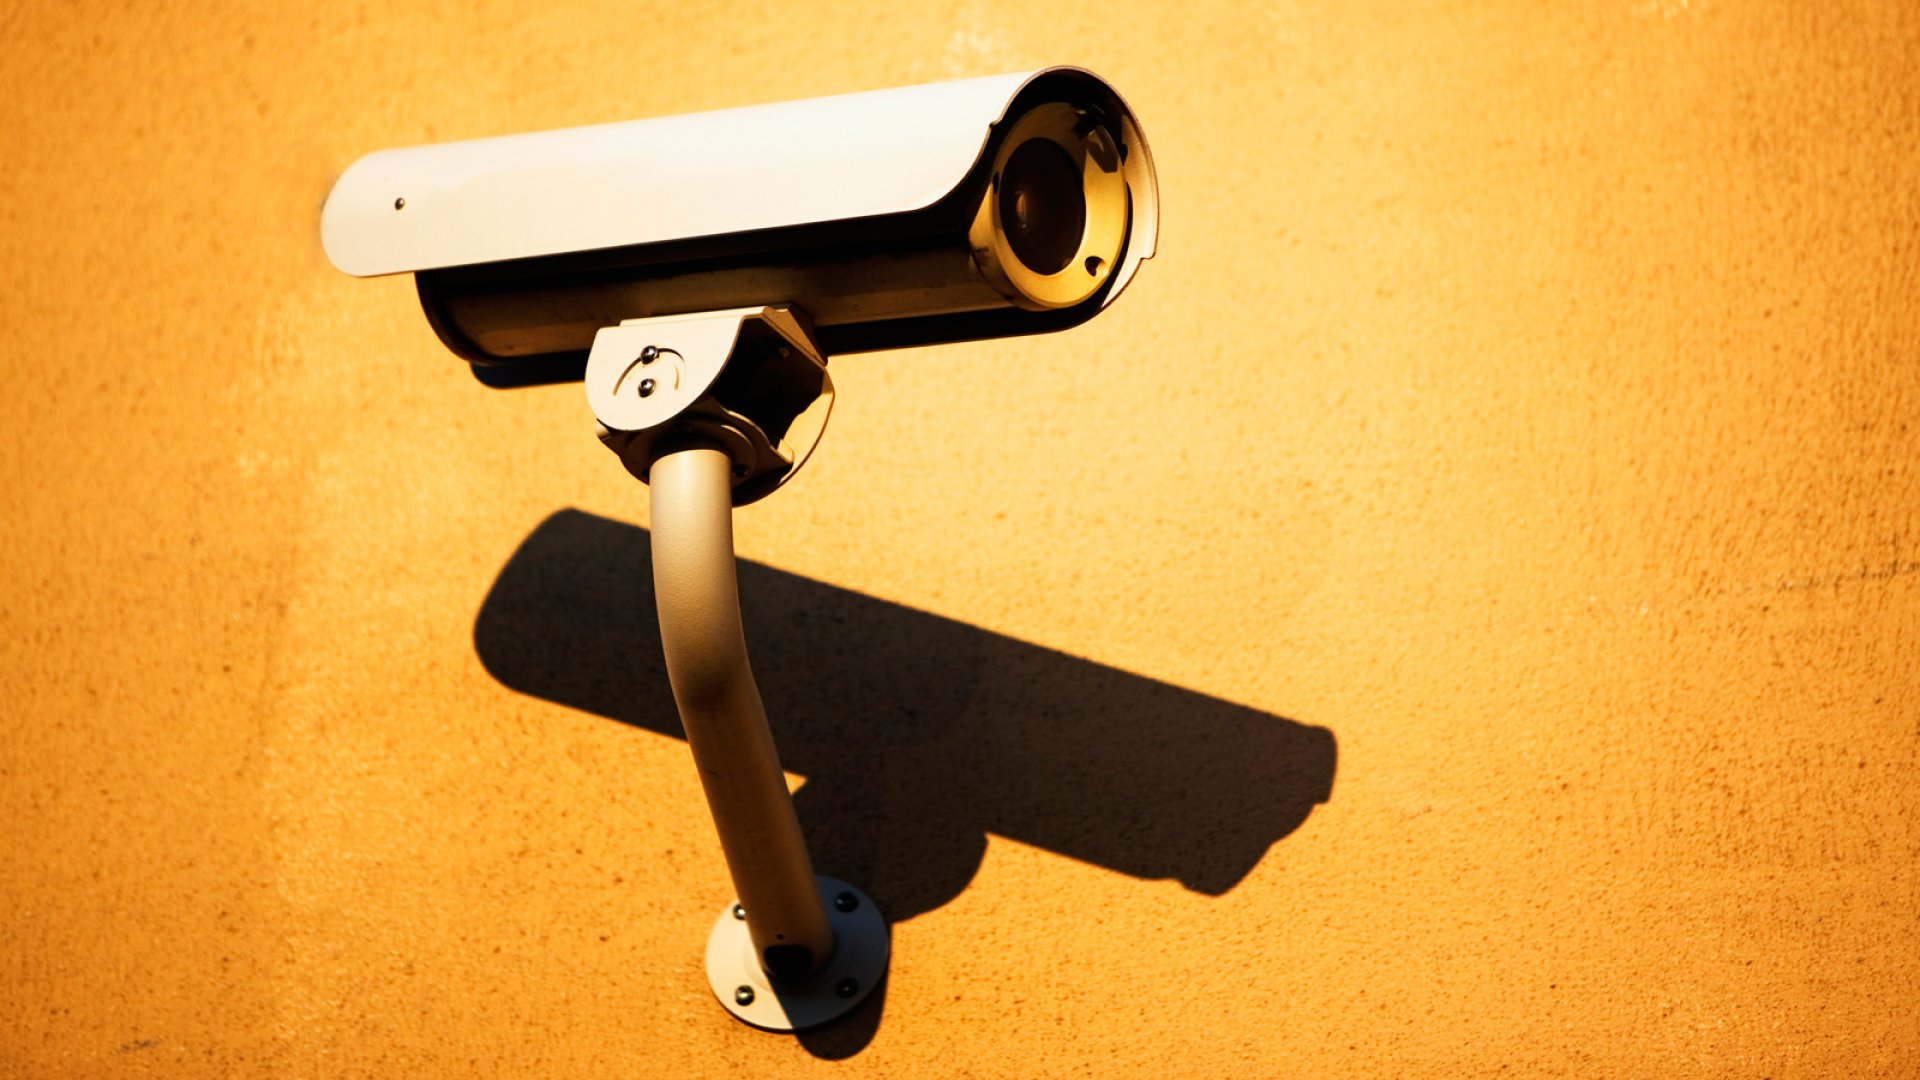 Big Brother la job: 60% din firmele americane utilizează un sistem de supraveghere al angajaților